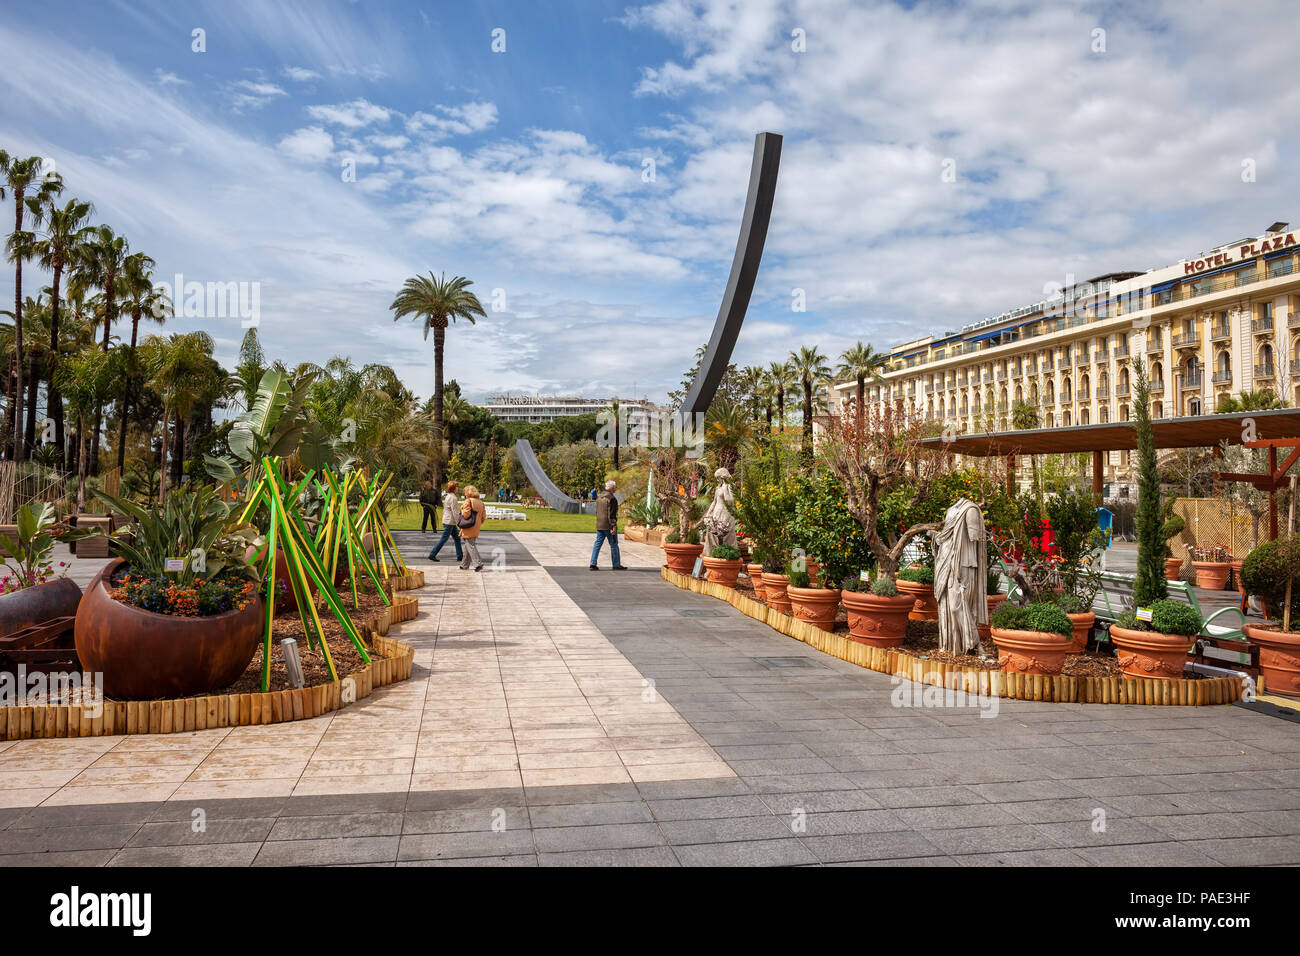 Frankreich, Nizza, Albert I Garten - Jardin Albert 1er, Park im Zentrum der Stadt Stockfoto